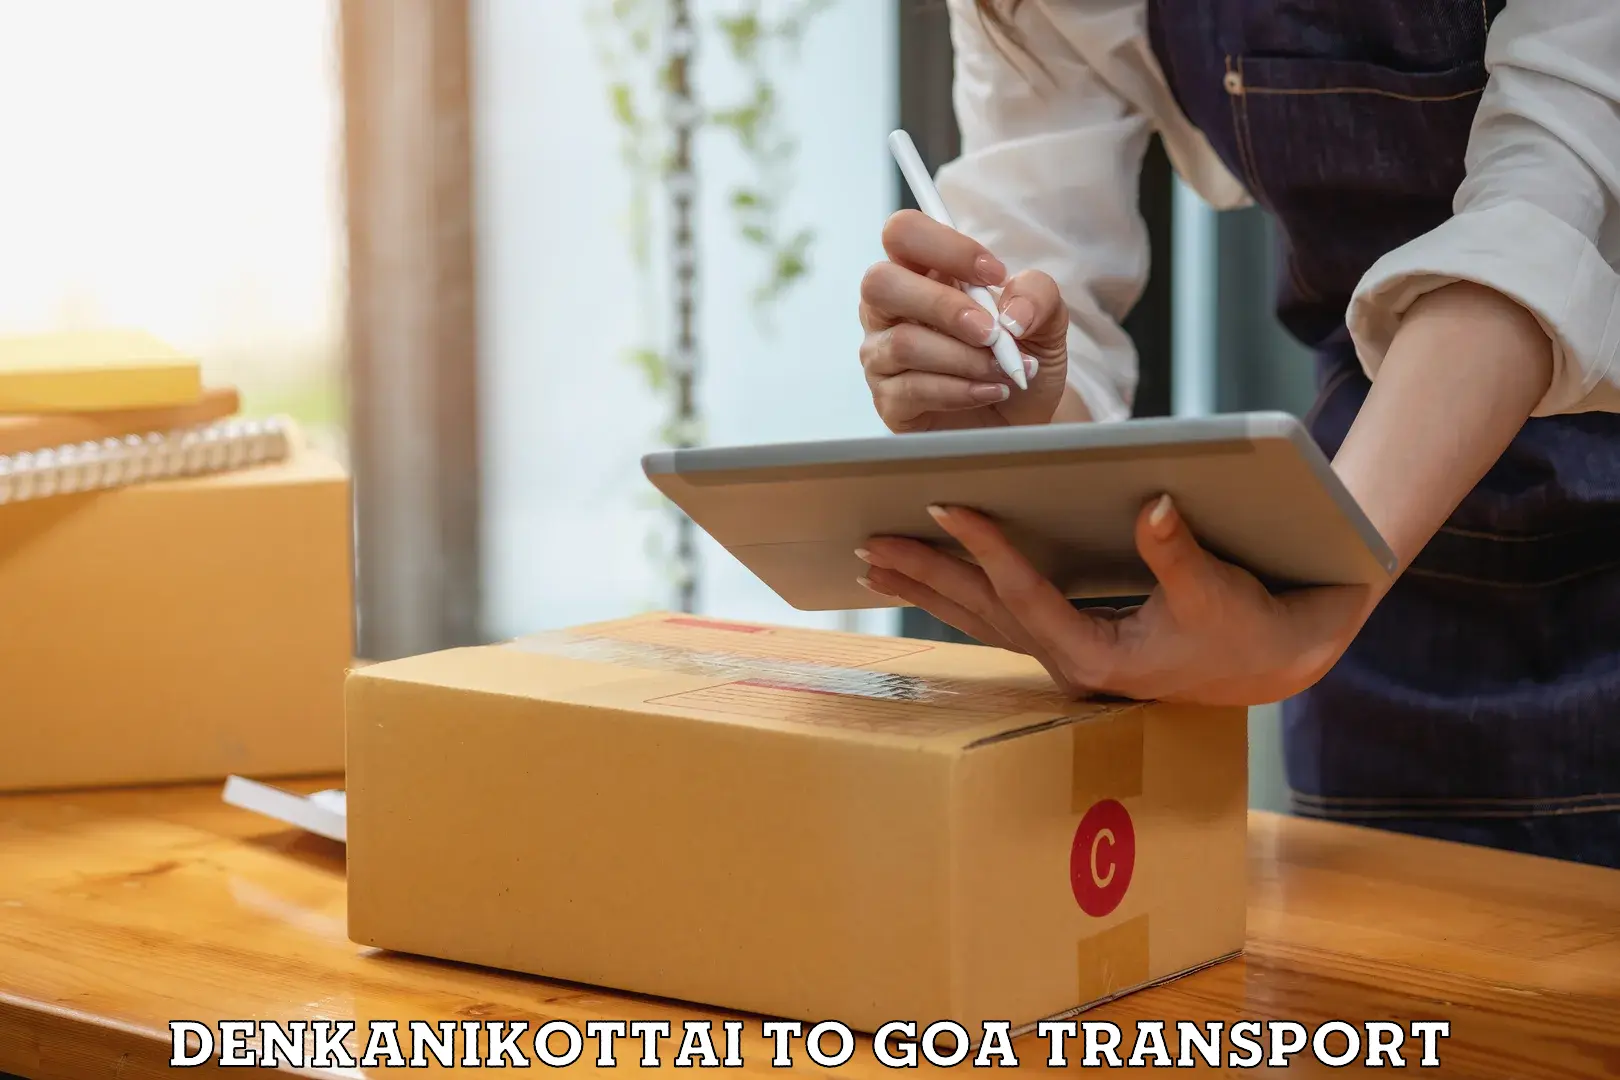 Shipping partner Denkanikottai to Goa University